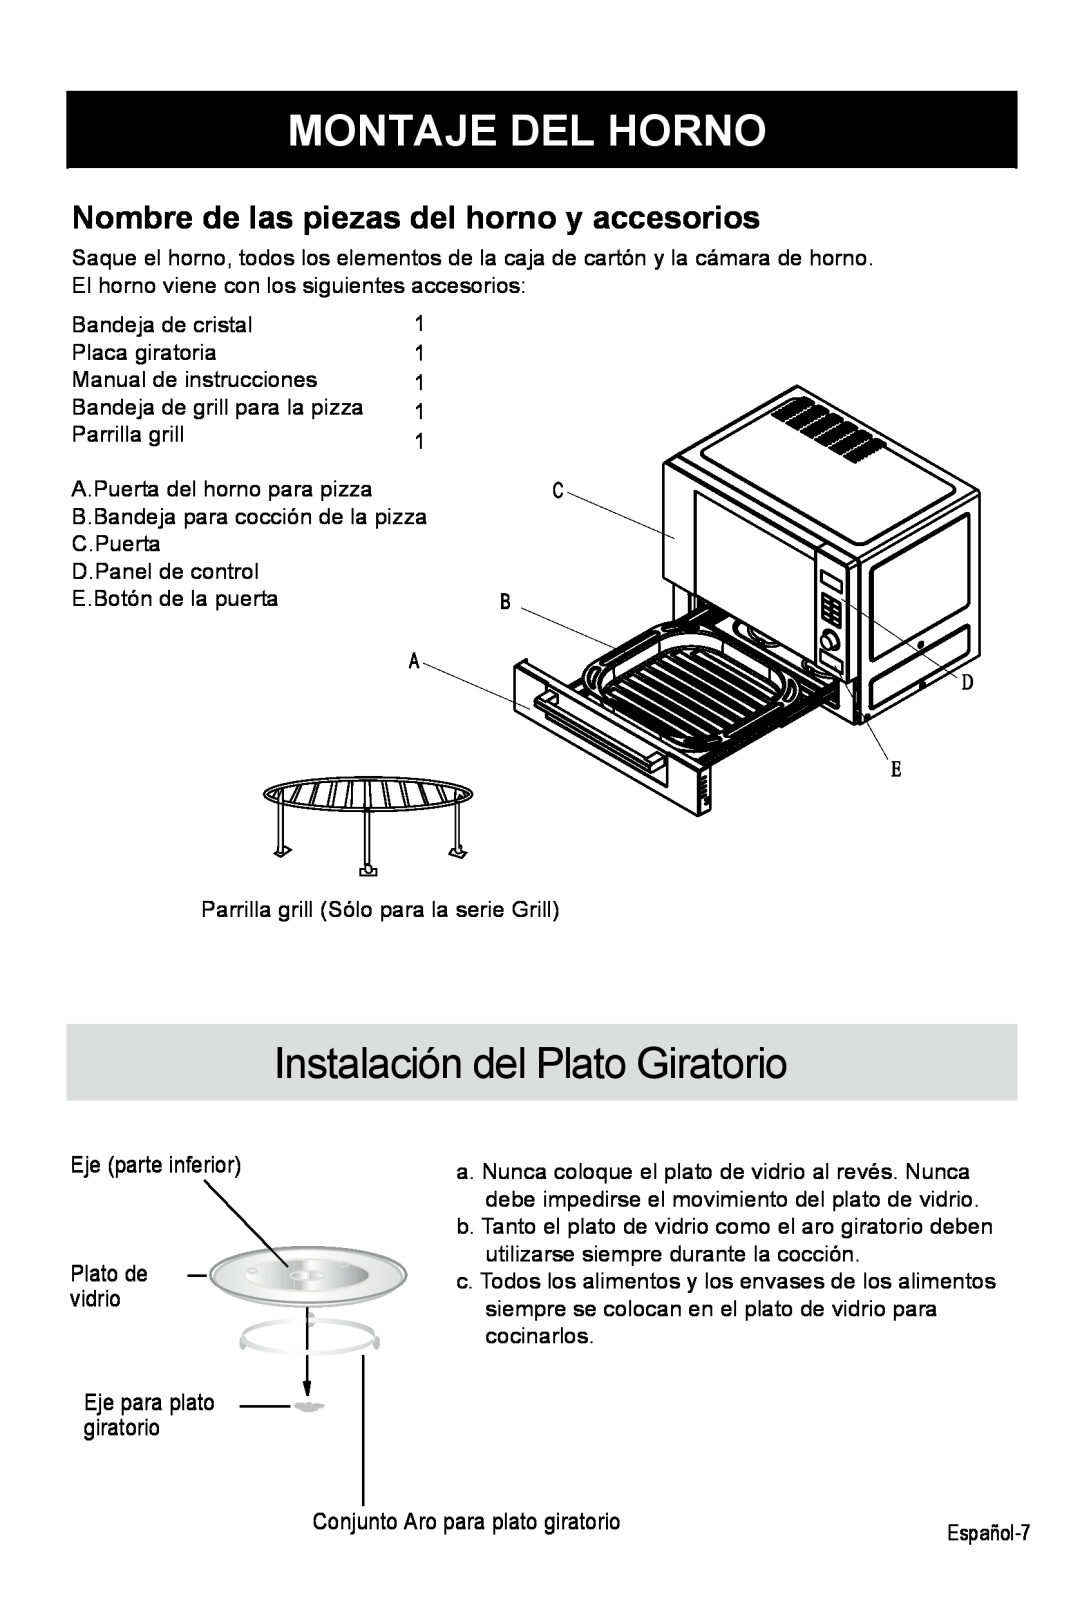 West Bend AG028PLV manual Montaje Del Horno, Instalación del Plato Giratorio, Nombre de las piezas del horno y accesorios 